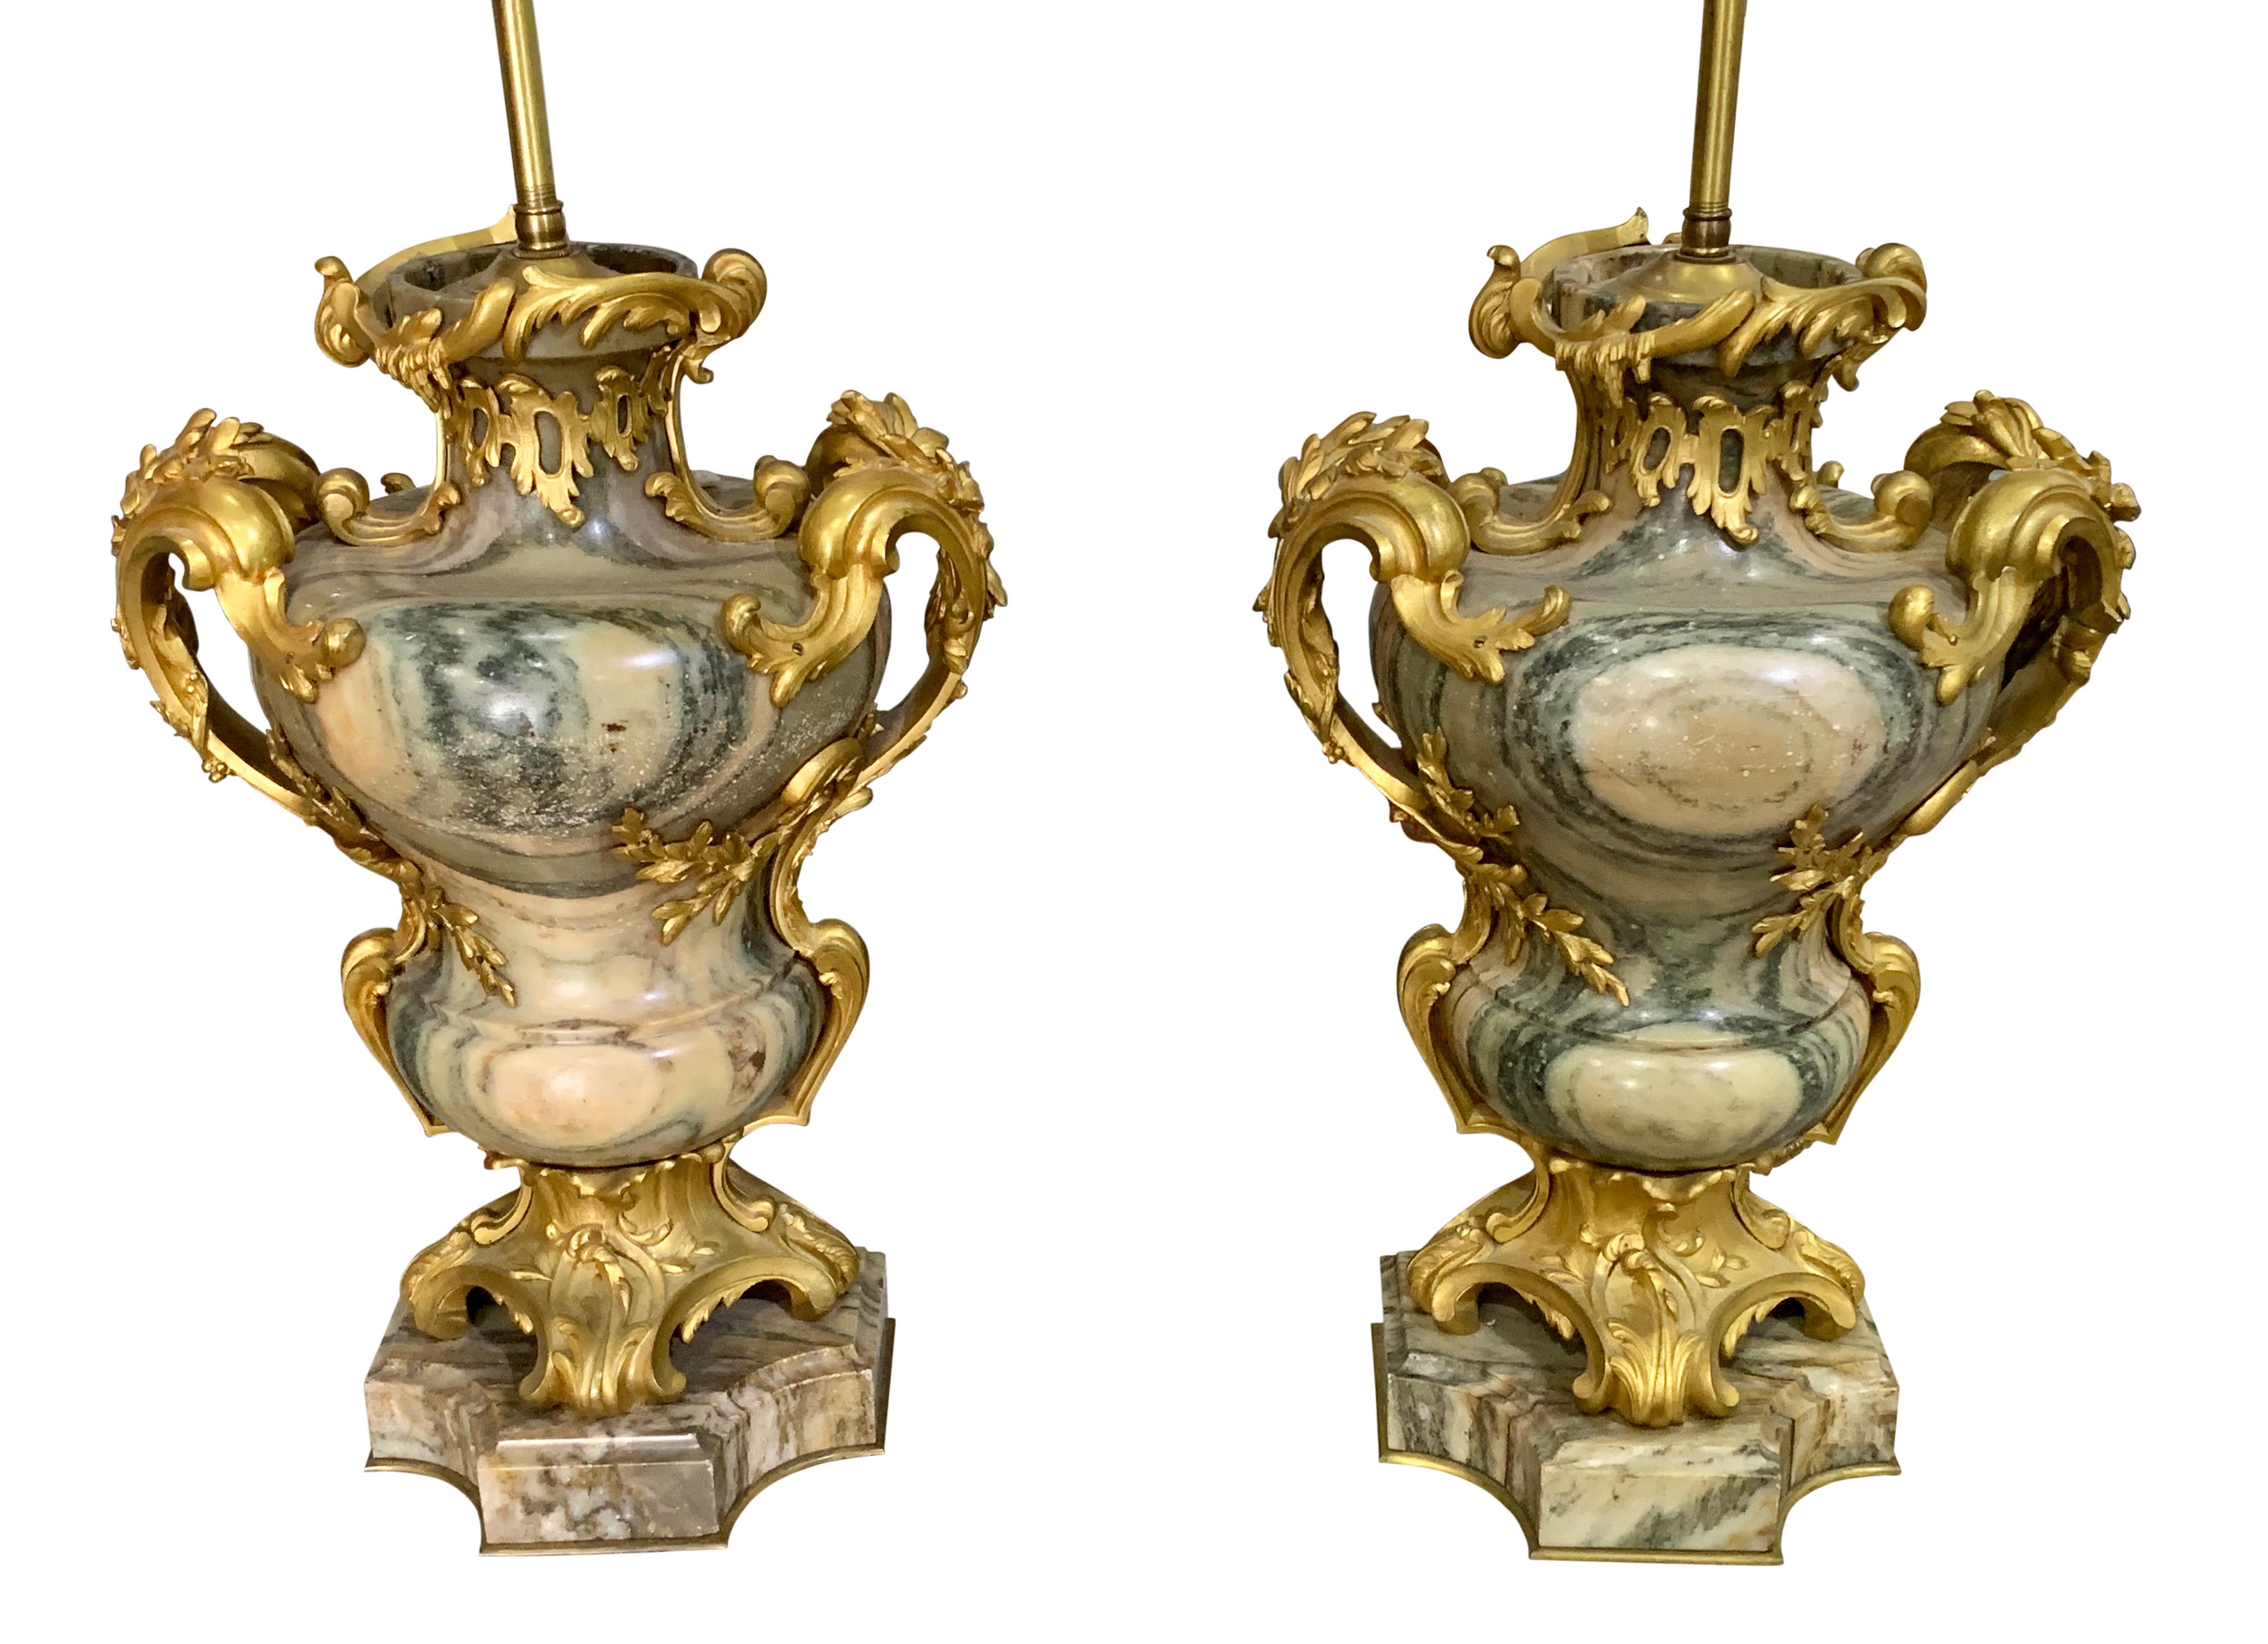 Une belle paire d'urnes en marbre Cipollino de style Louis XV du 19ème siècle, montées en bronze doré et réalisées de main de maître par la Maison Millet, maintenant montées comme lampes. Chaque vase en marbre Cipolin Antique de Grèce avec deux